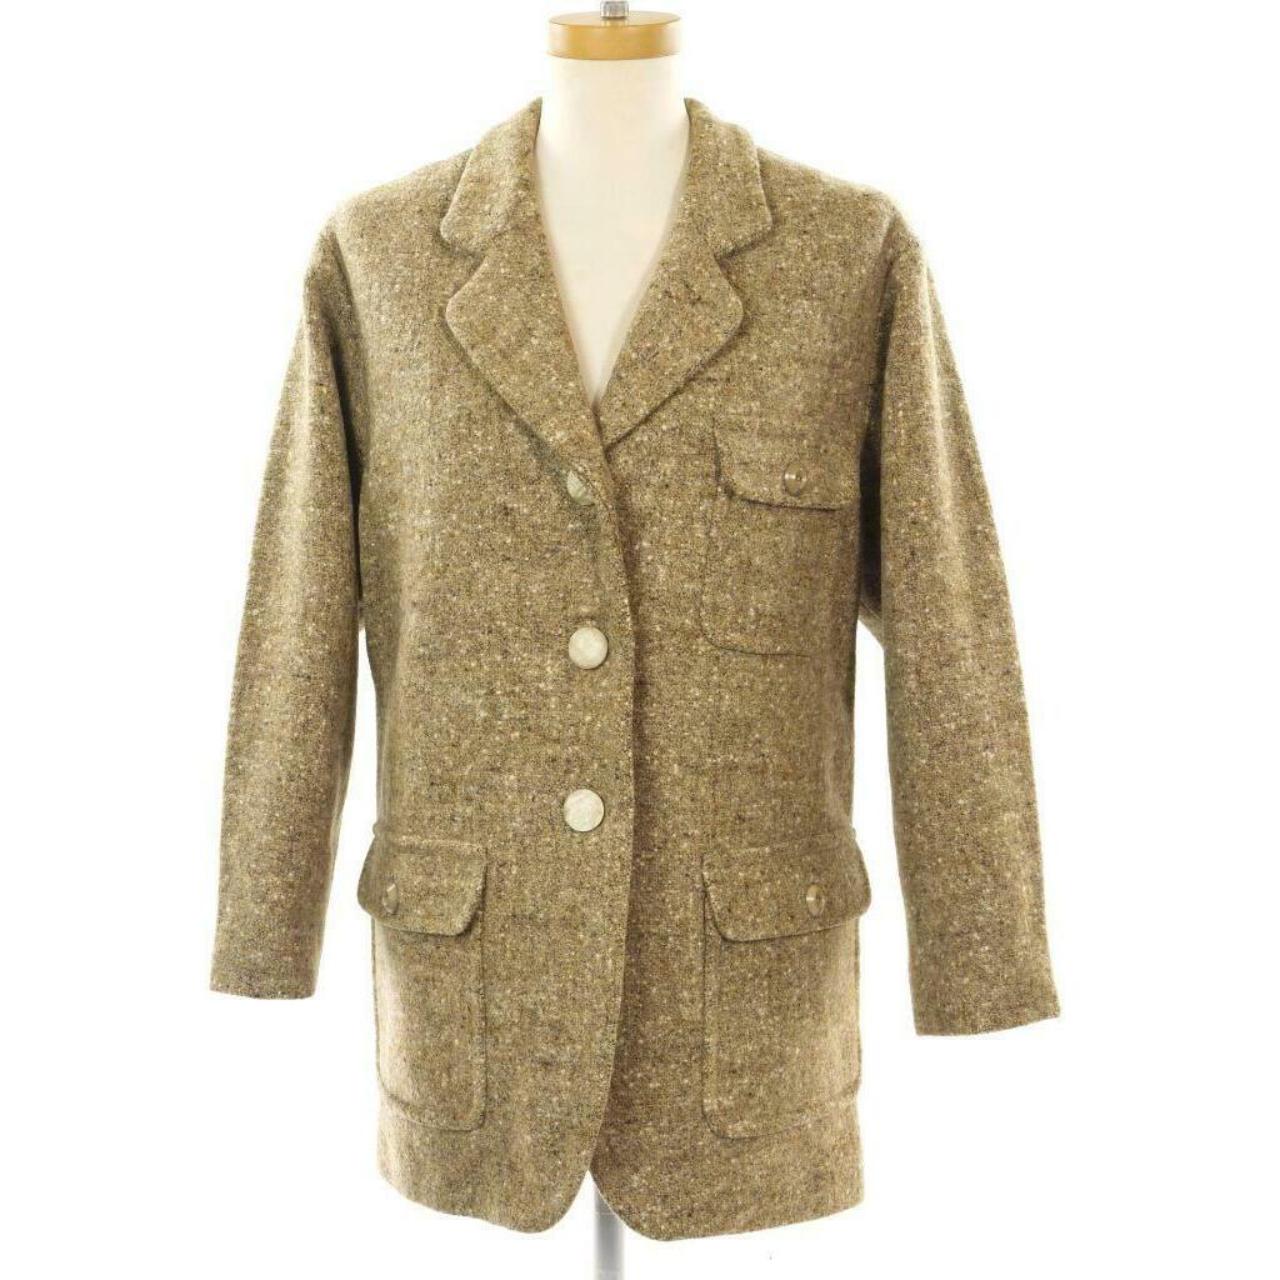 Vintage 90s EDDIE BAUER light brown tweed / wool...